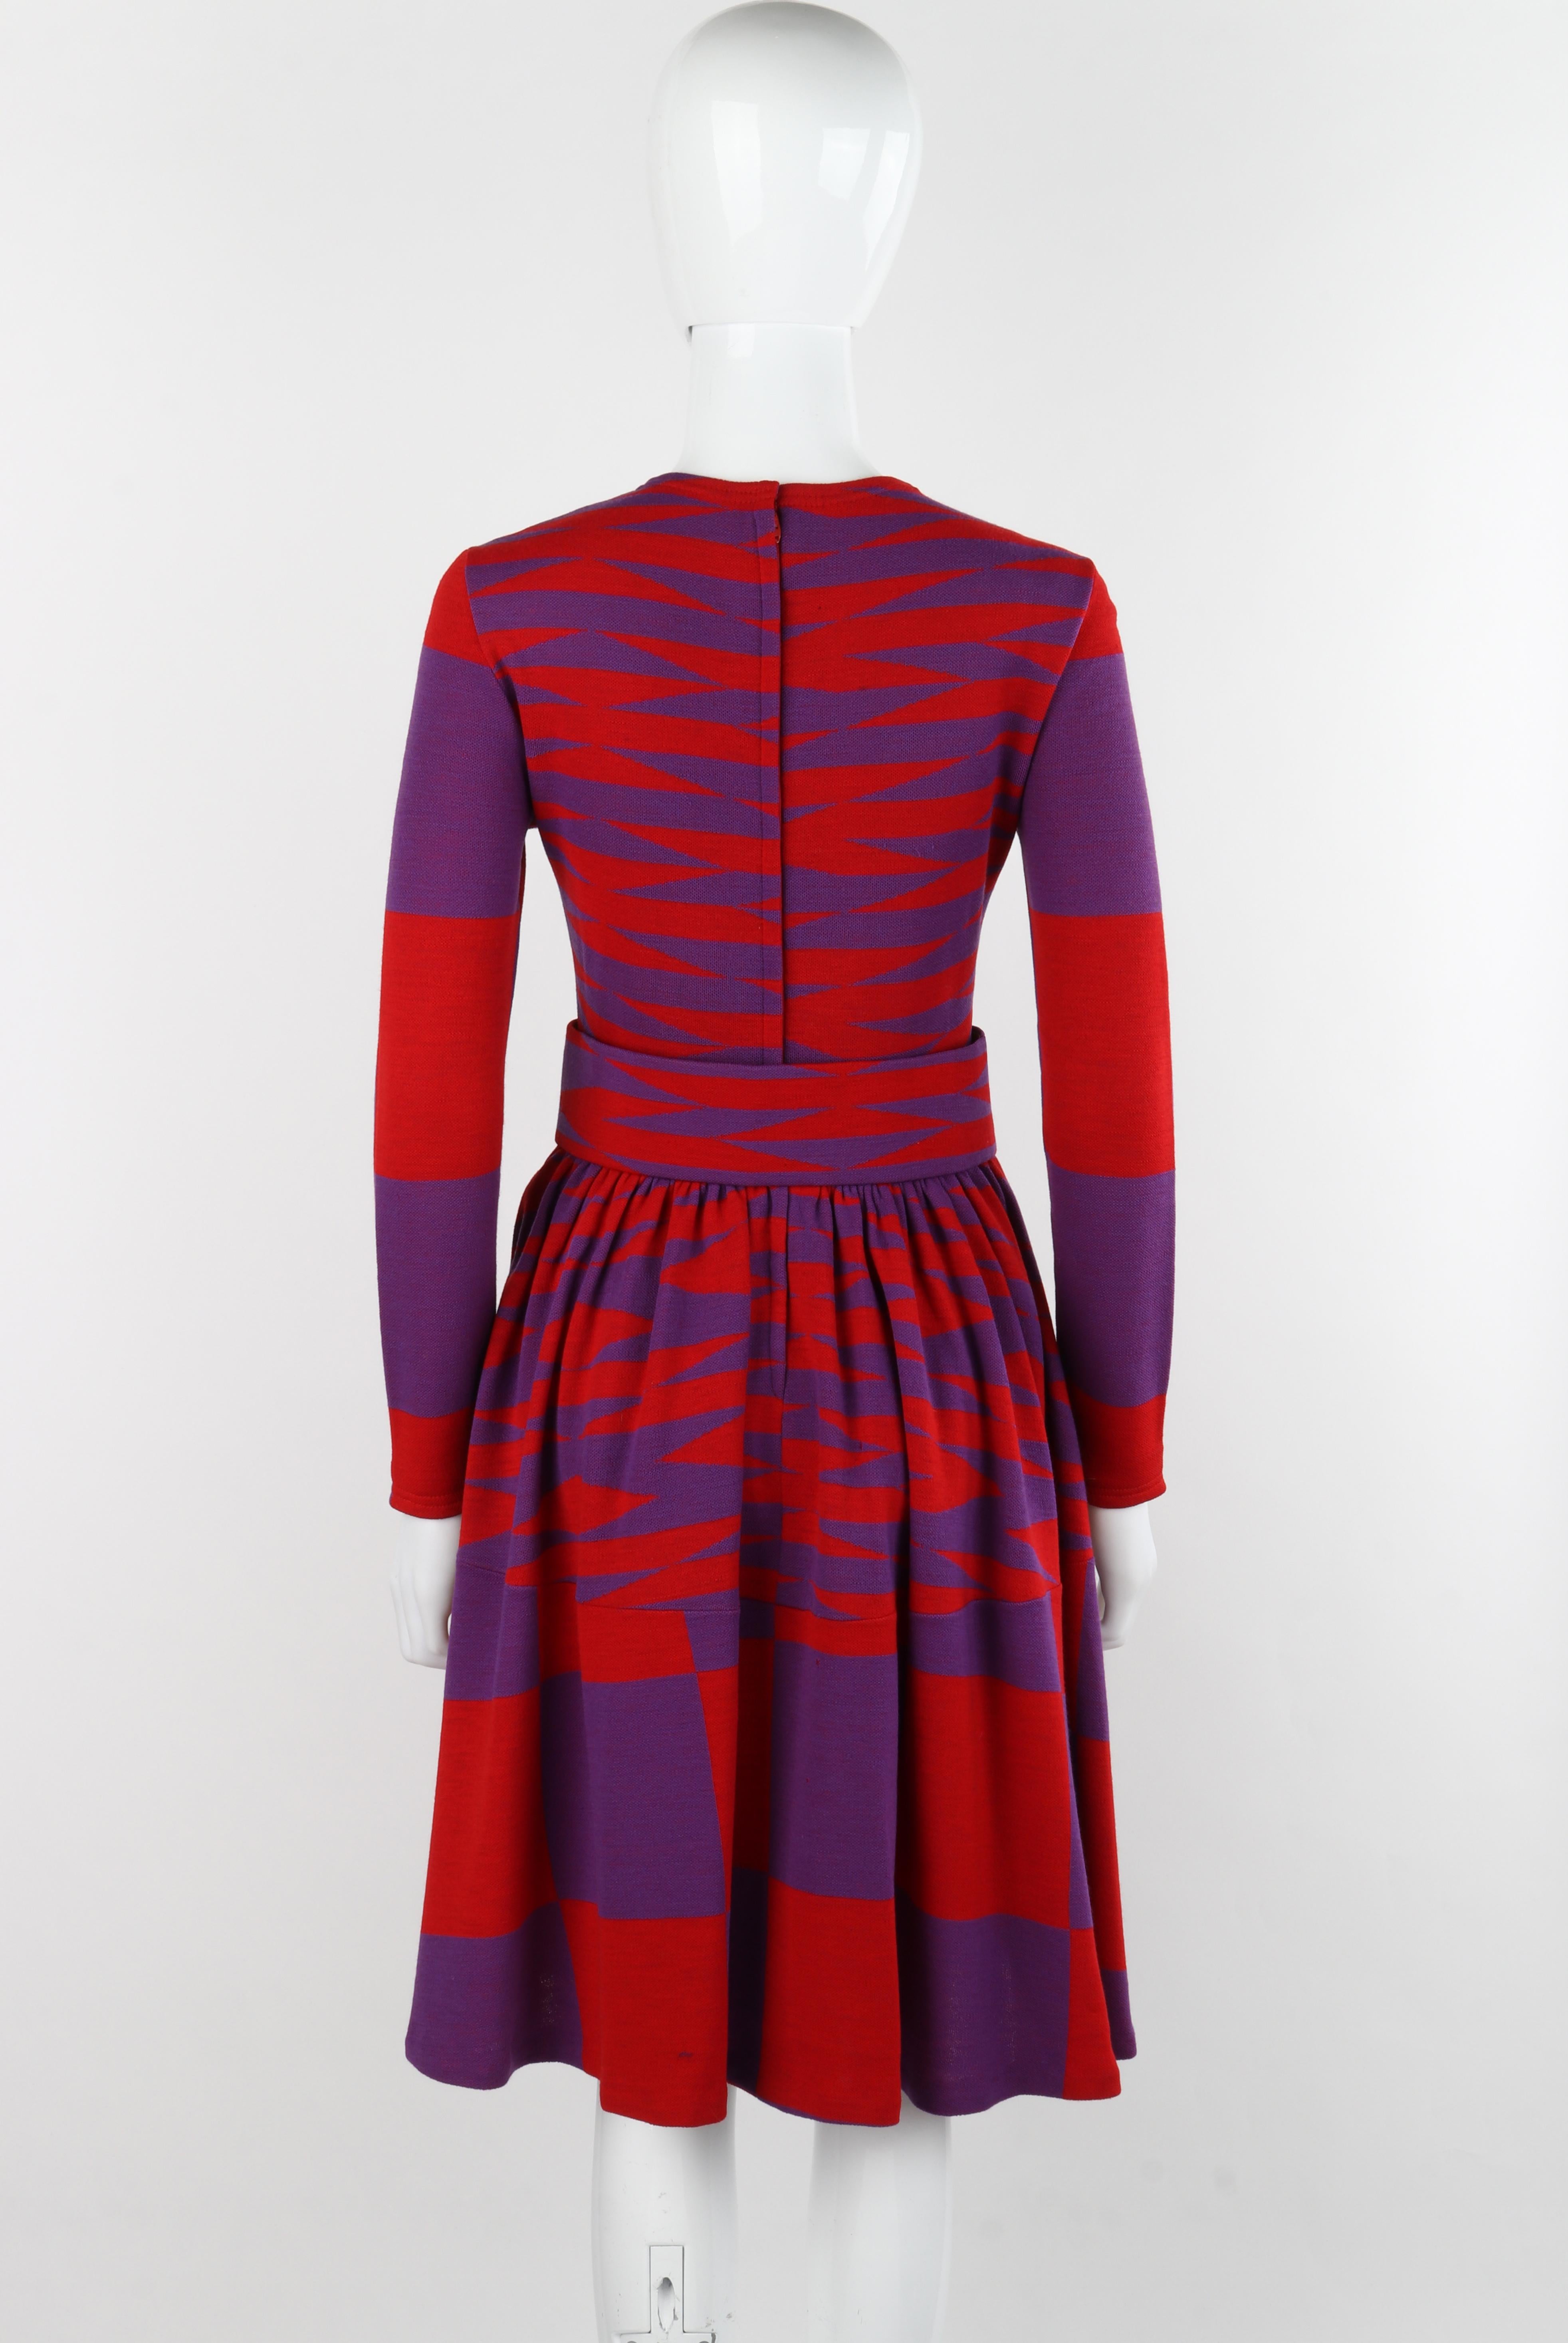 RUDI GERNREICH Harmon Knitwear c.1971 Purple Red Mod Op Art Wool Knit Day Dress For Sale 1